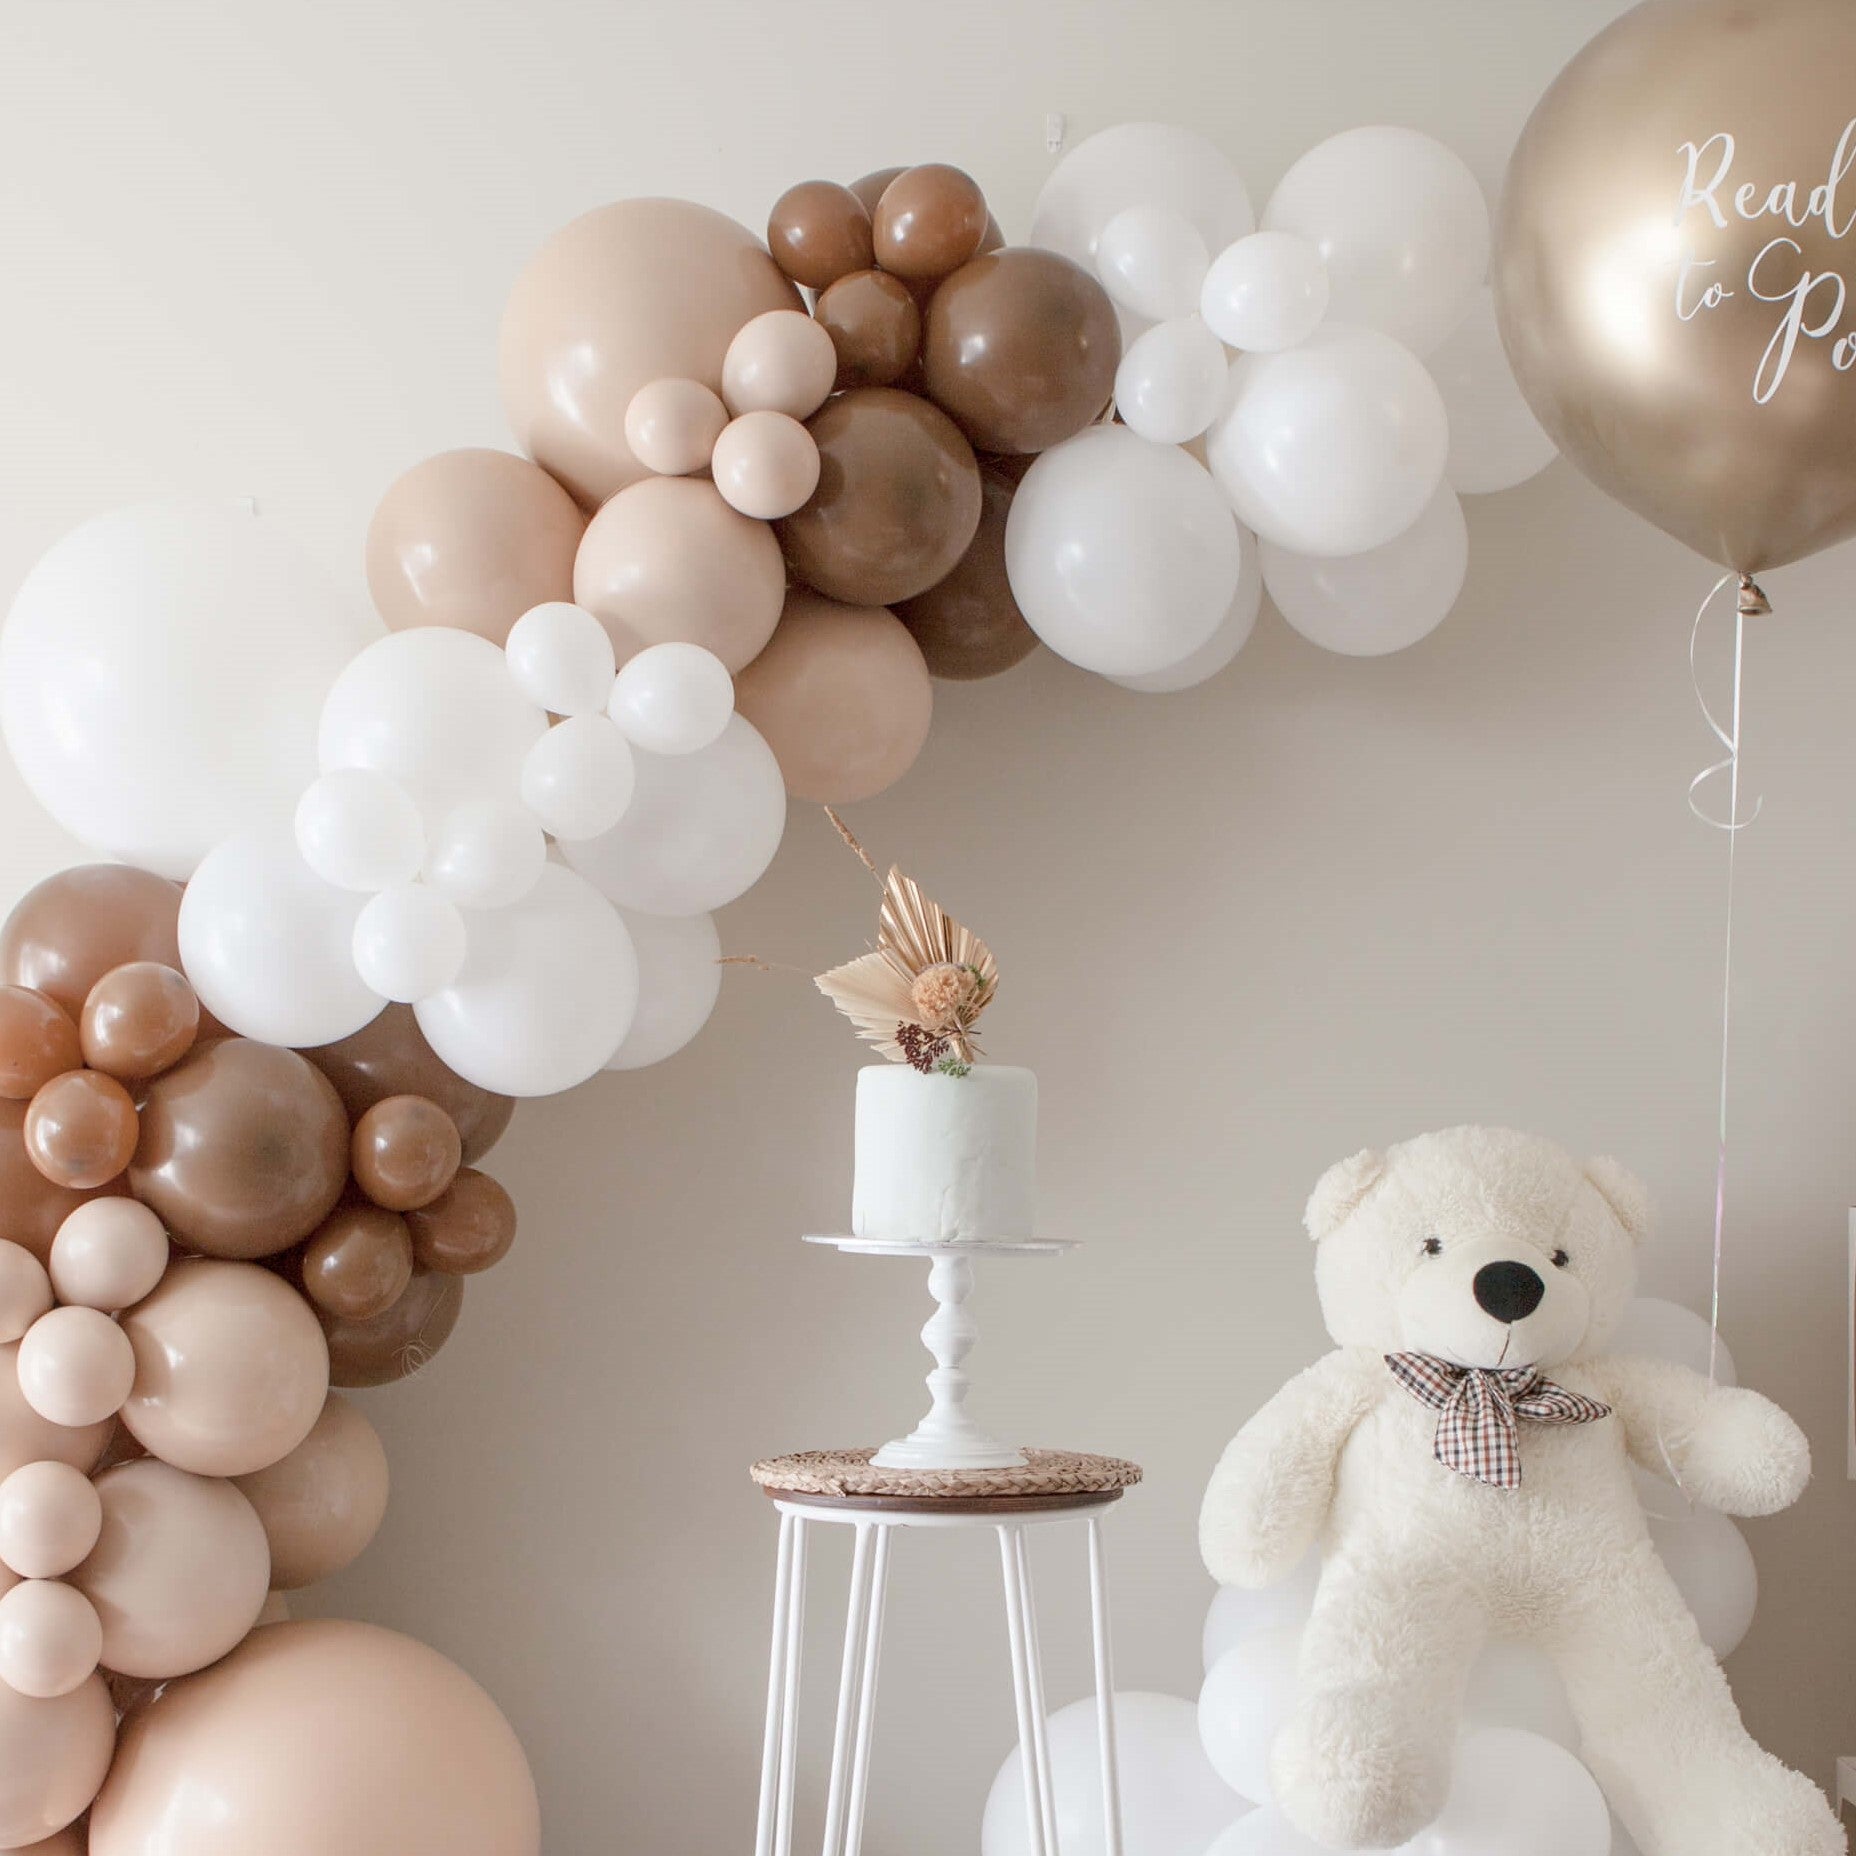 We Can't Bearly Wait Gender Reveal Balloon Garland DIY Kit - White, Blush & Brown Latex Balloons